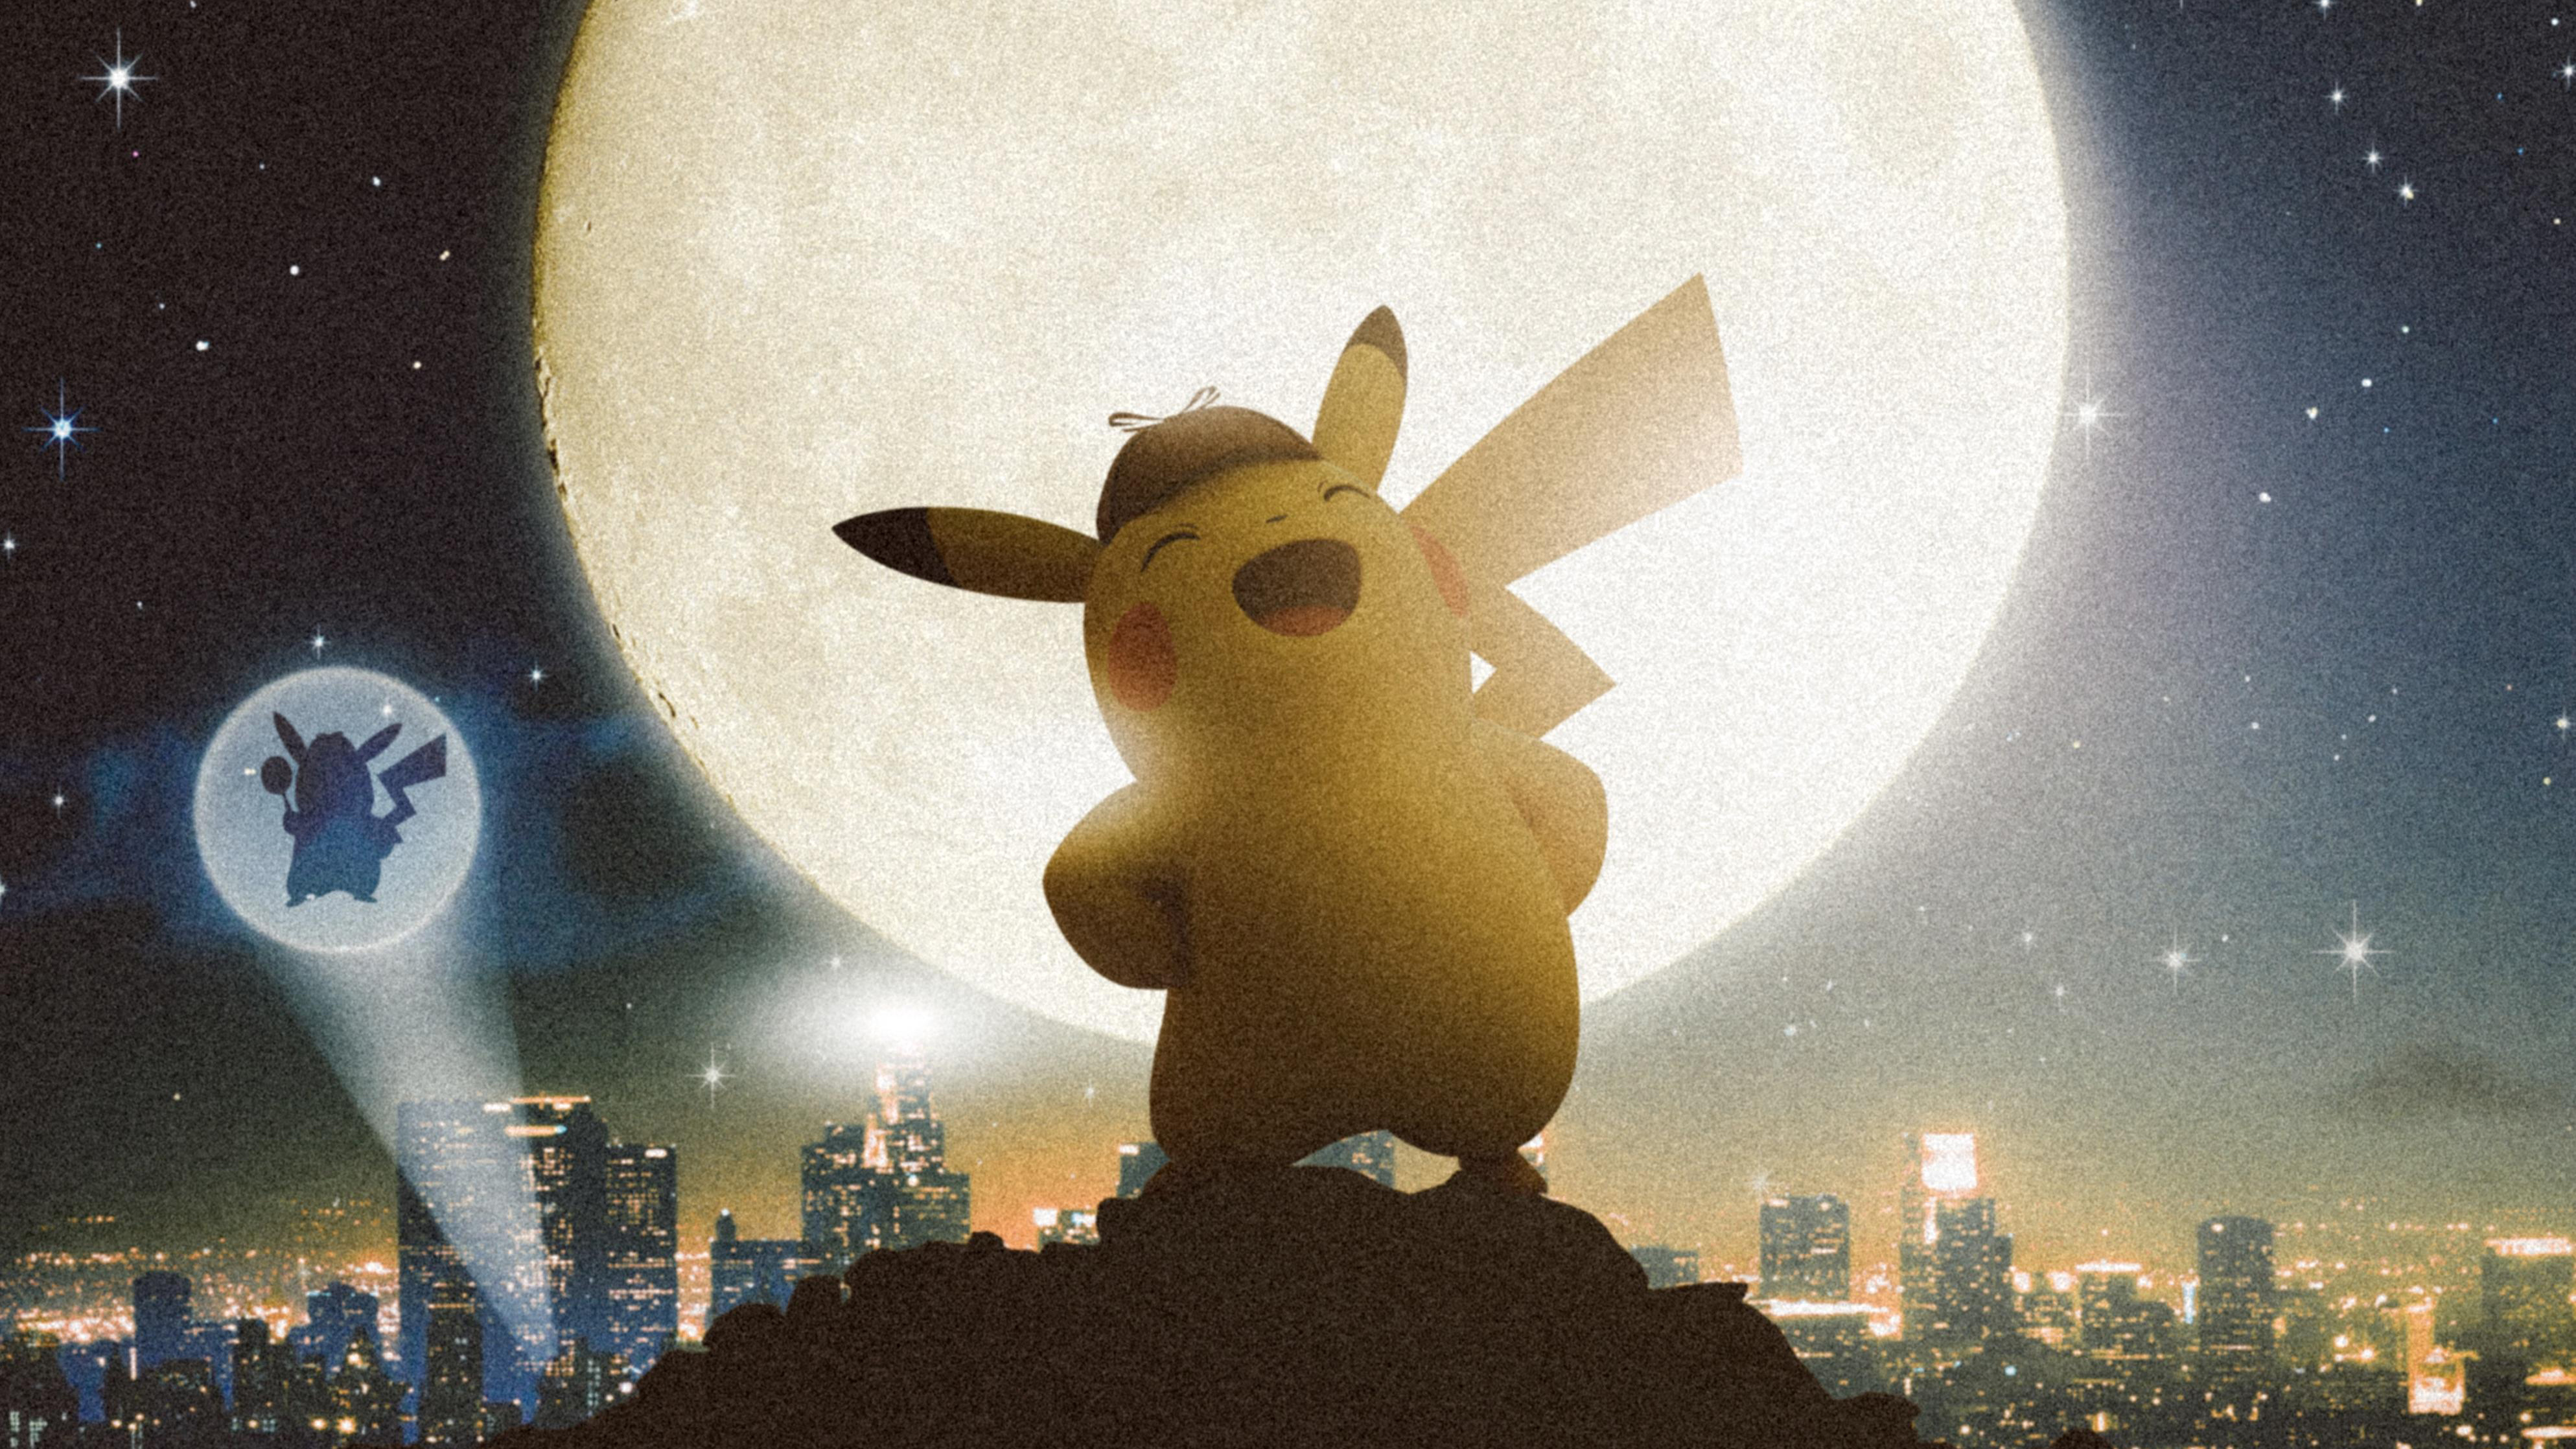 Pok Mon Detective Pikachu 4k Ultra HD Wallpaper Background Image